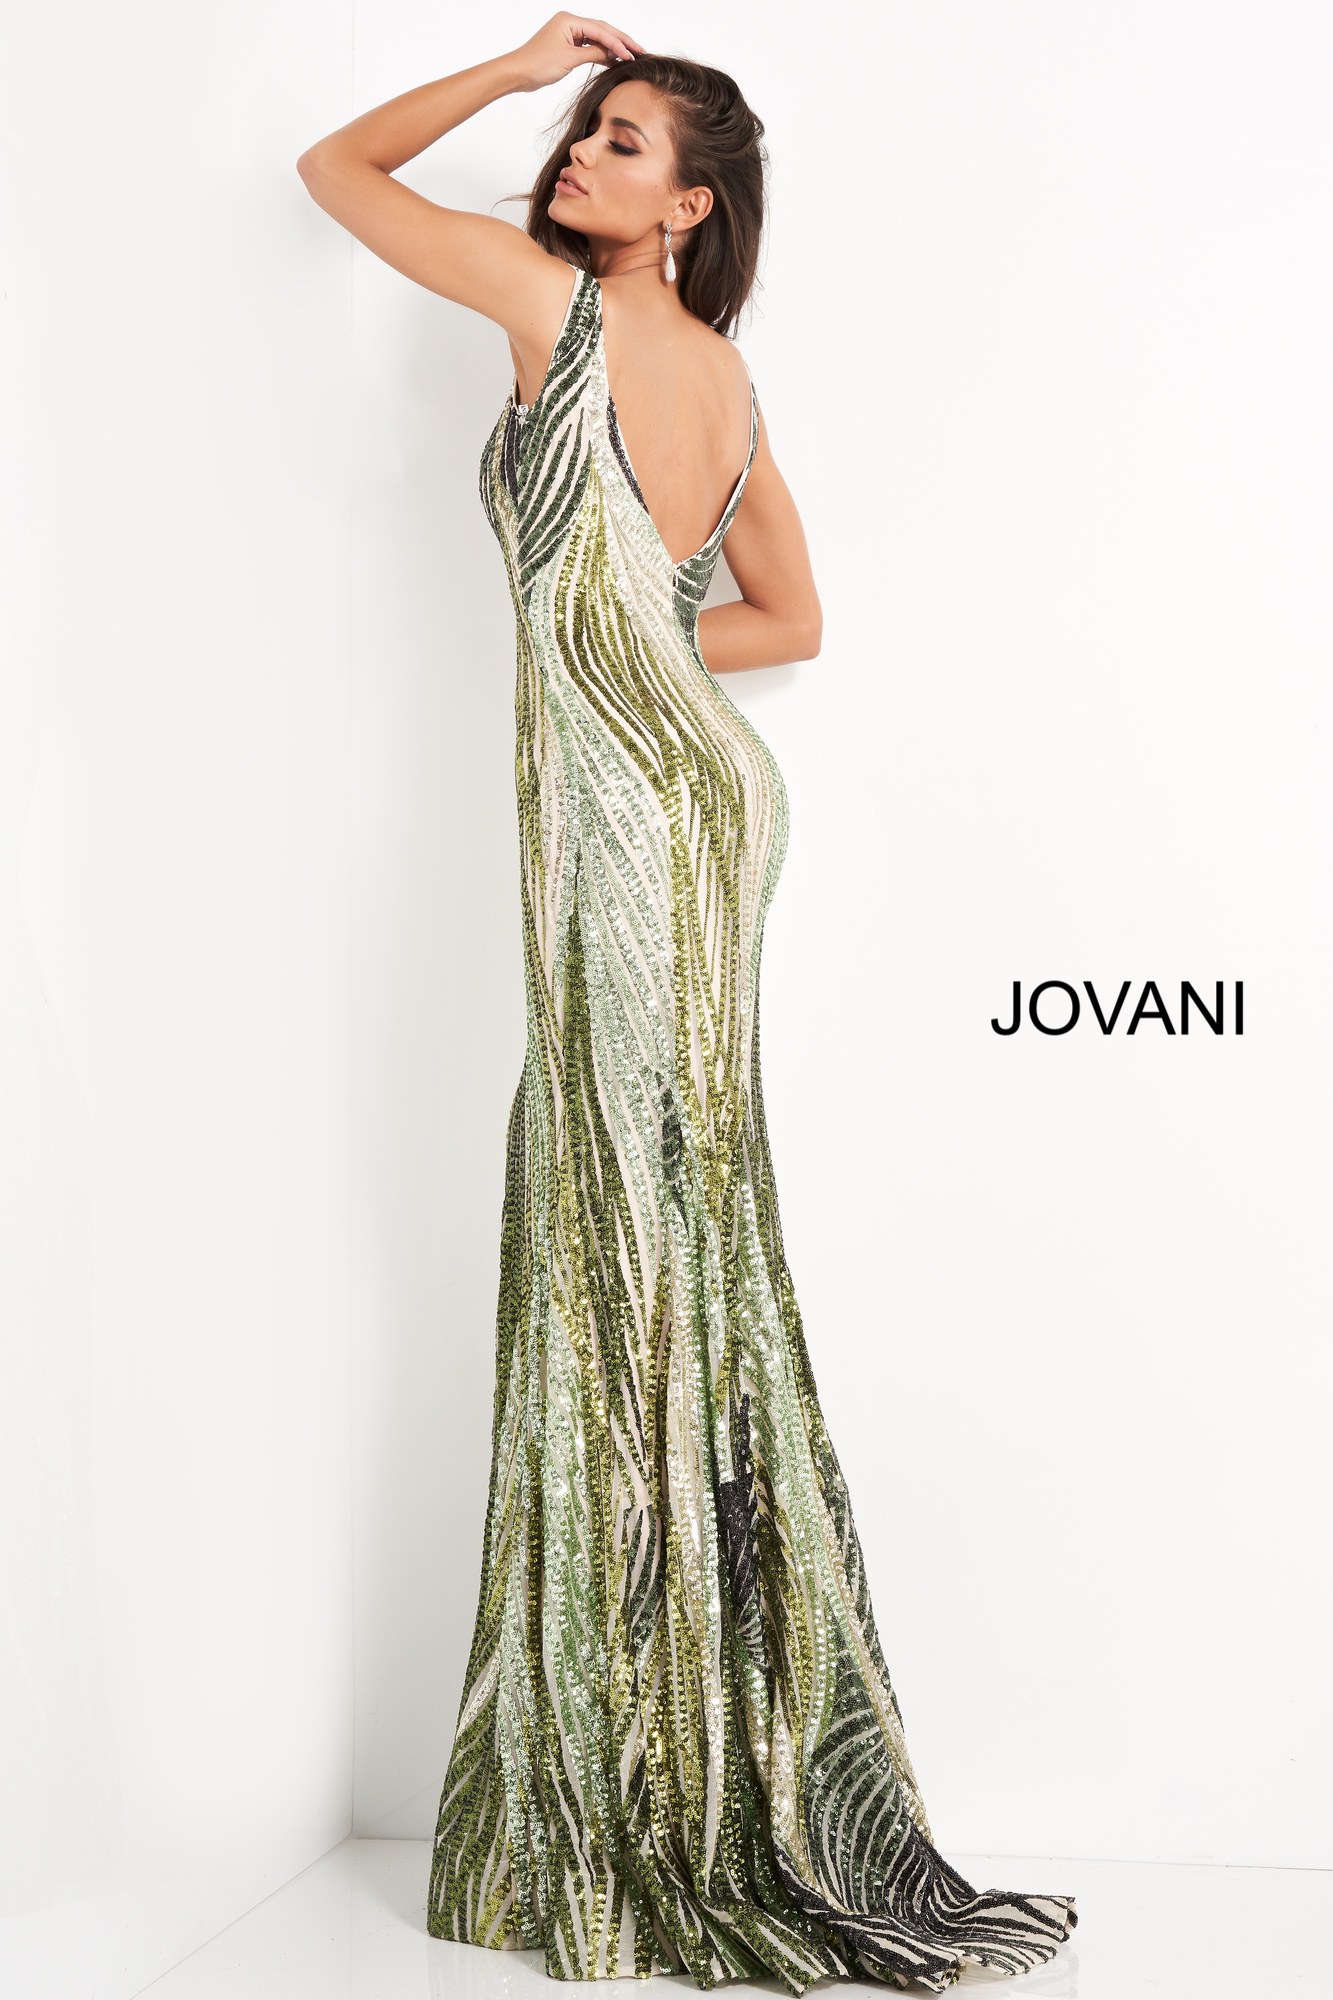 Jovani 05103 Green Embellished Plunging Neckline Prom Dress